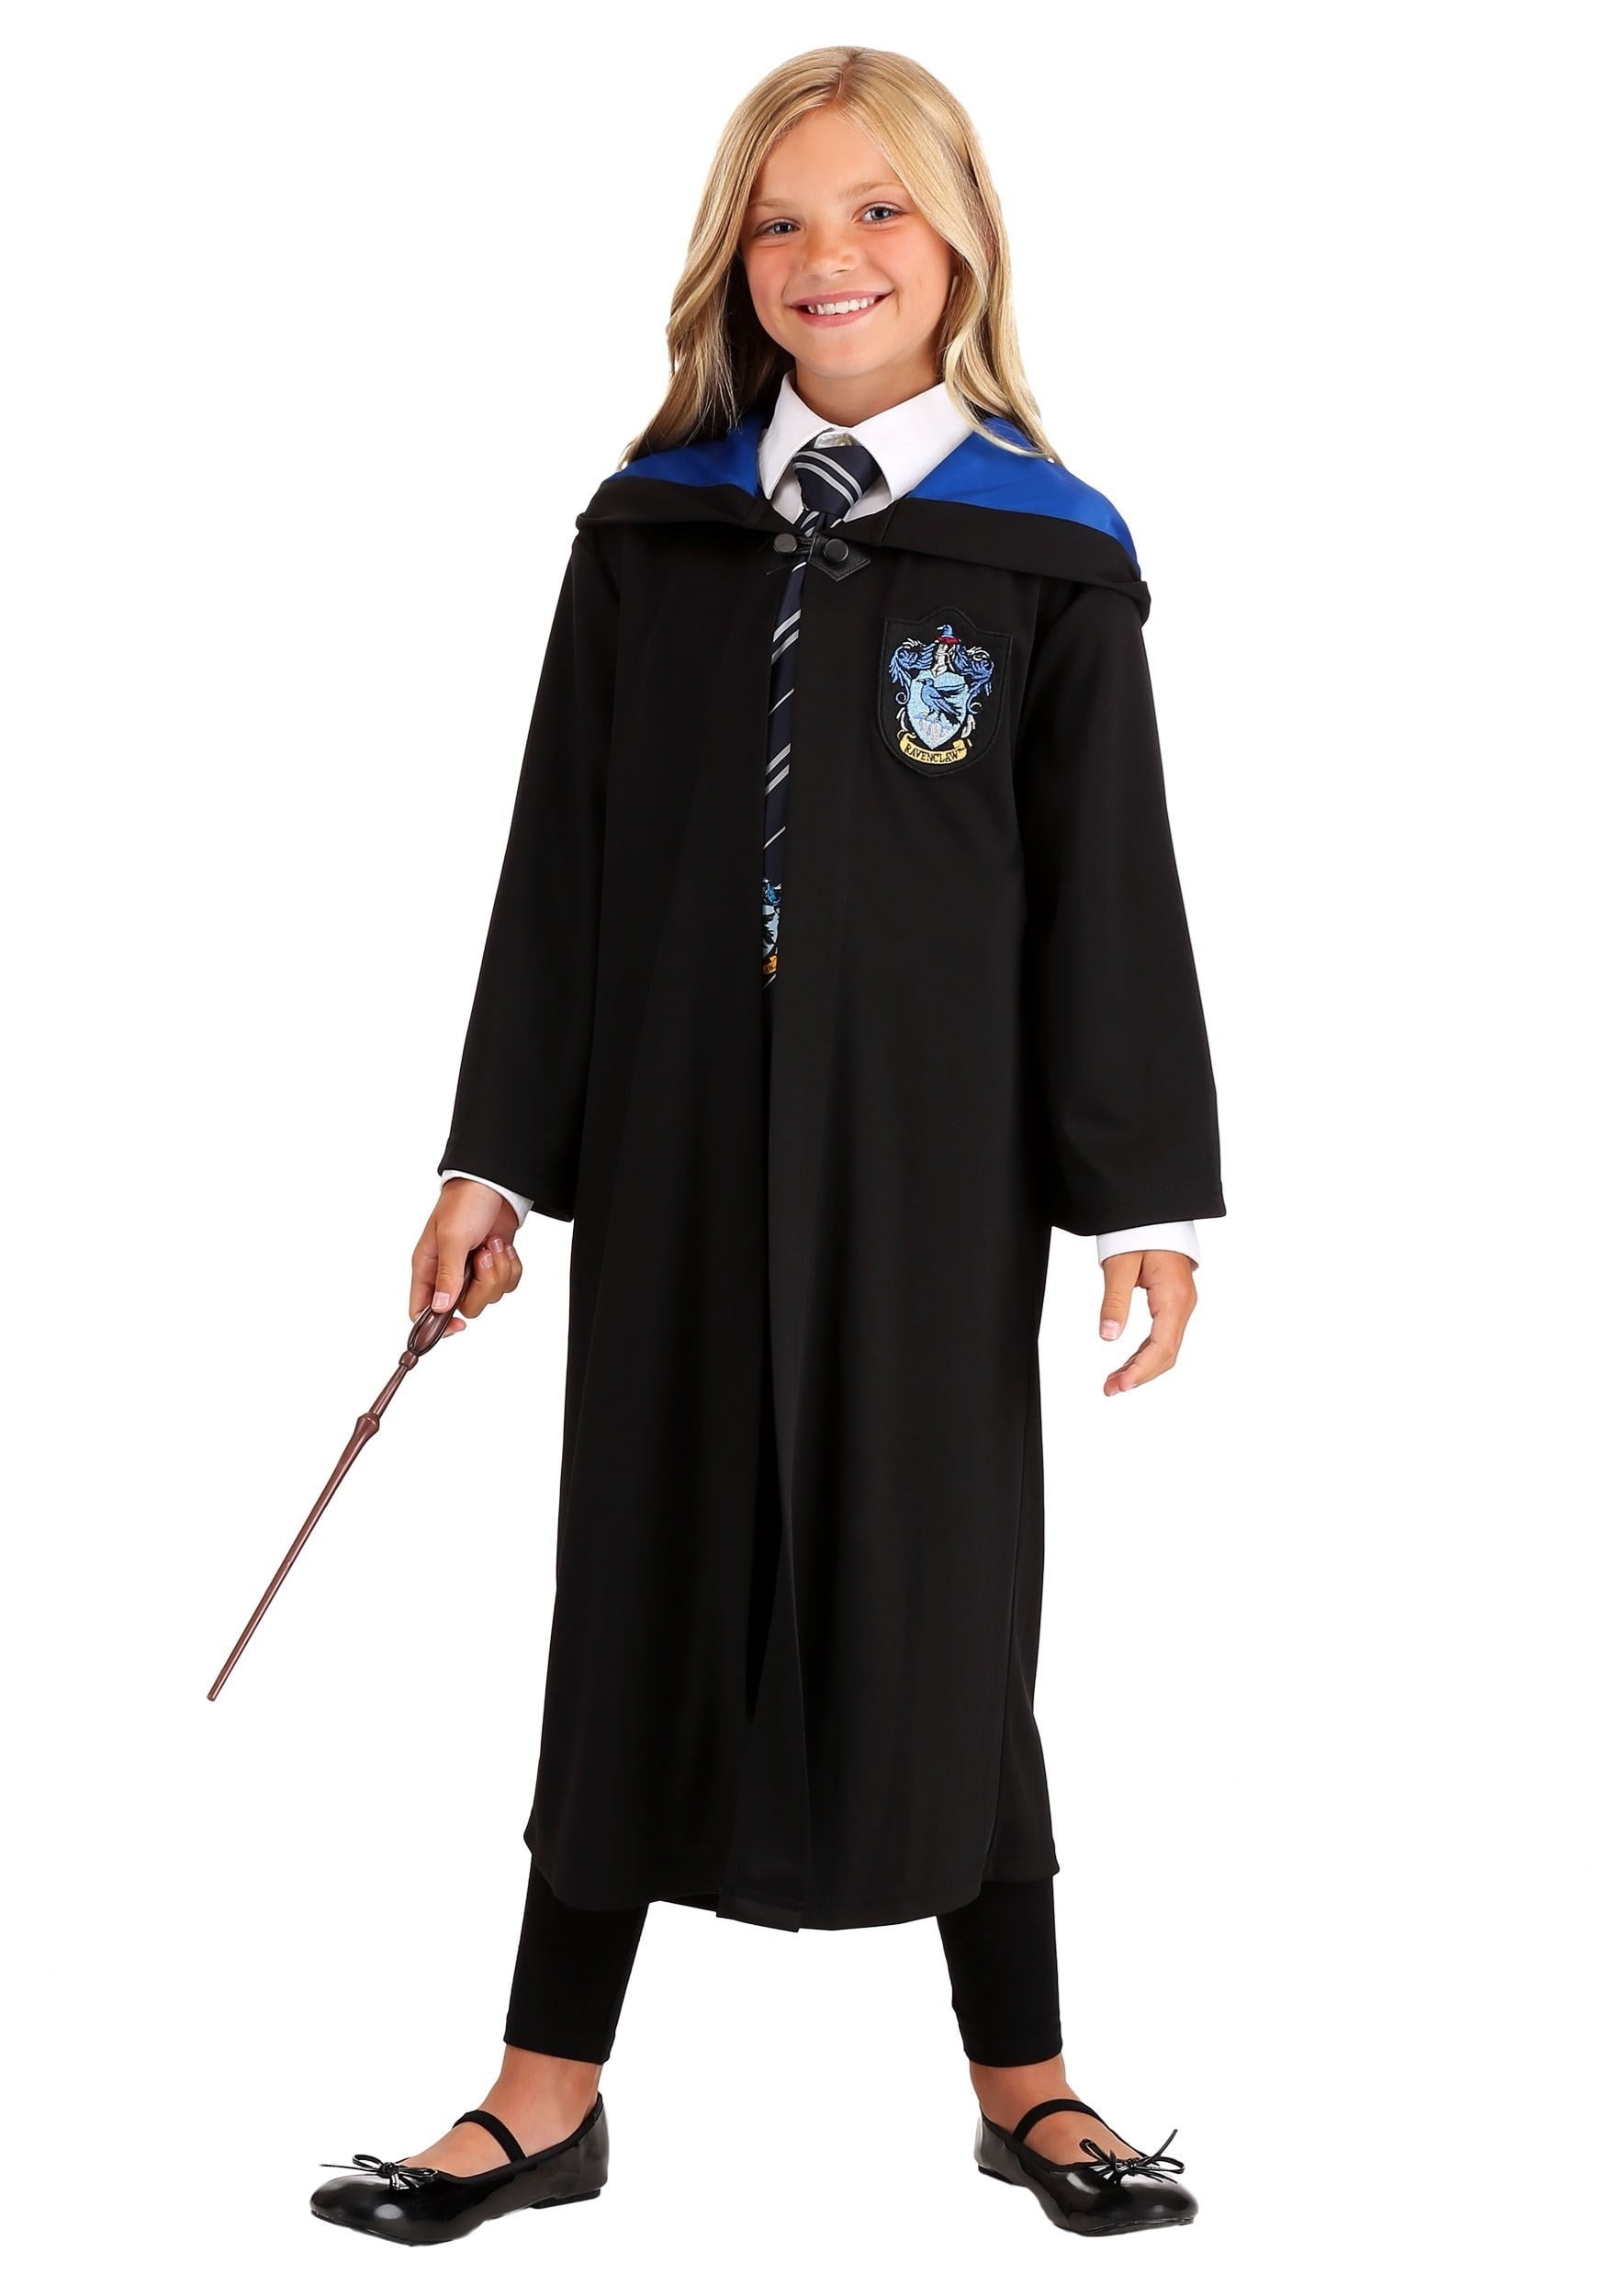 Licensed Girls Harry Potter Skirt Hufflepuff Ravenclaw Child Kids Costume Dress 